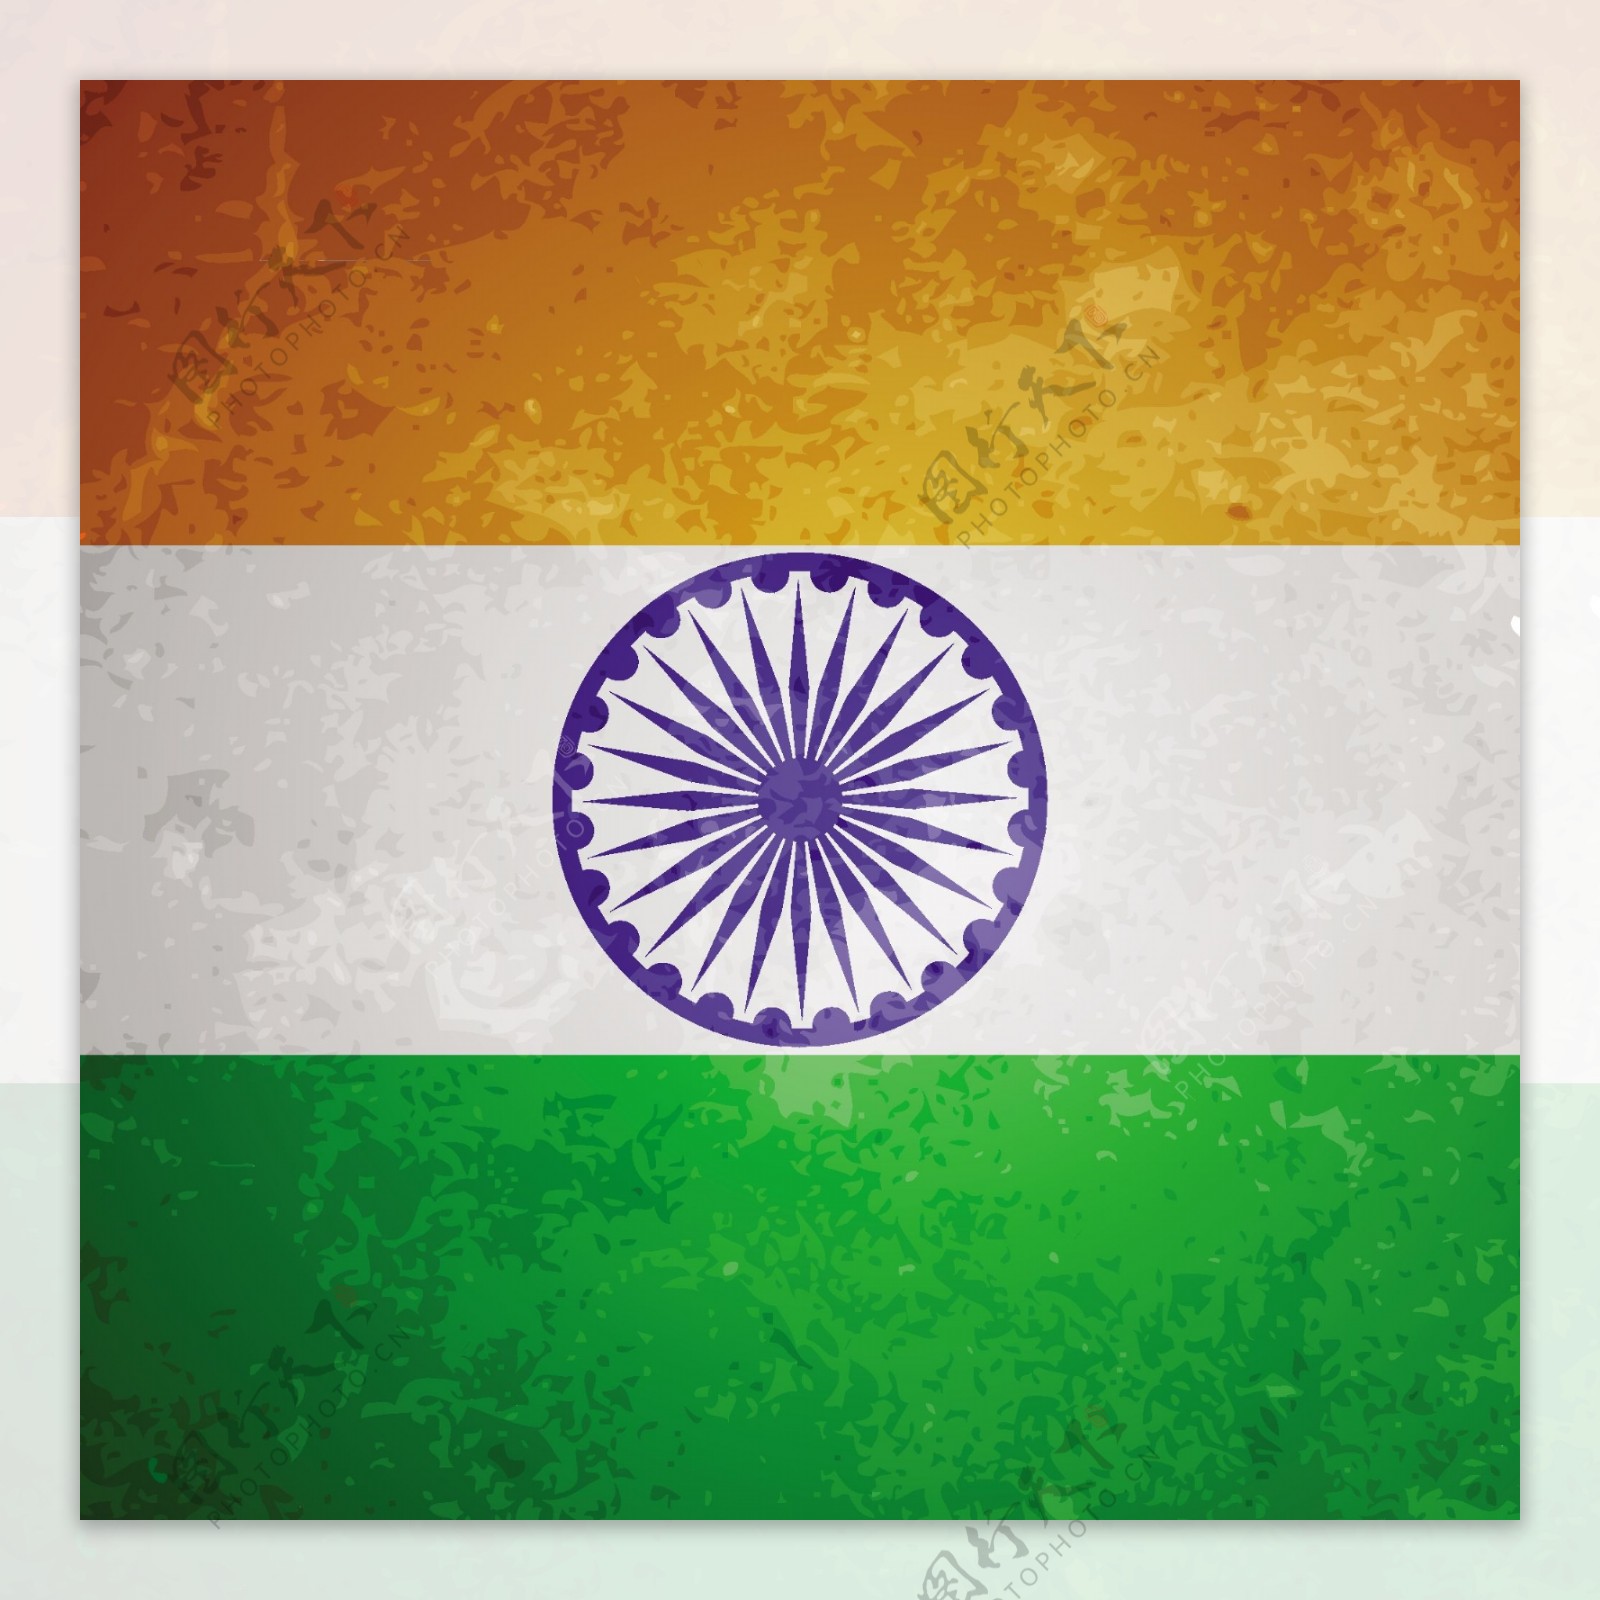 印度国旗蹩脚的背景